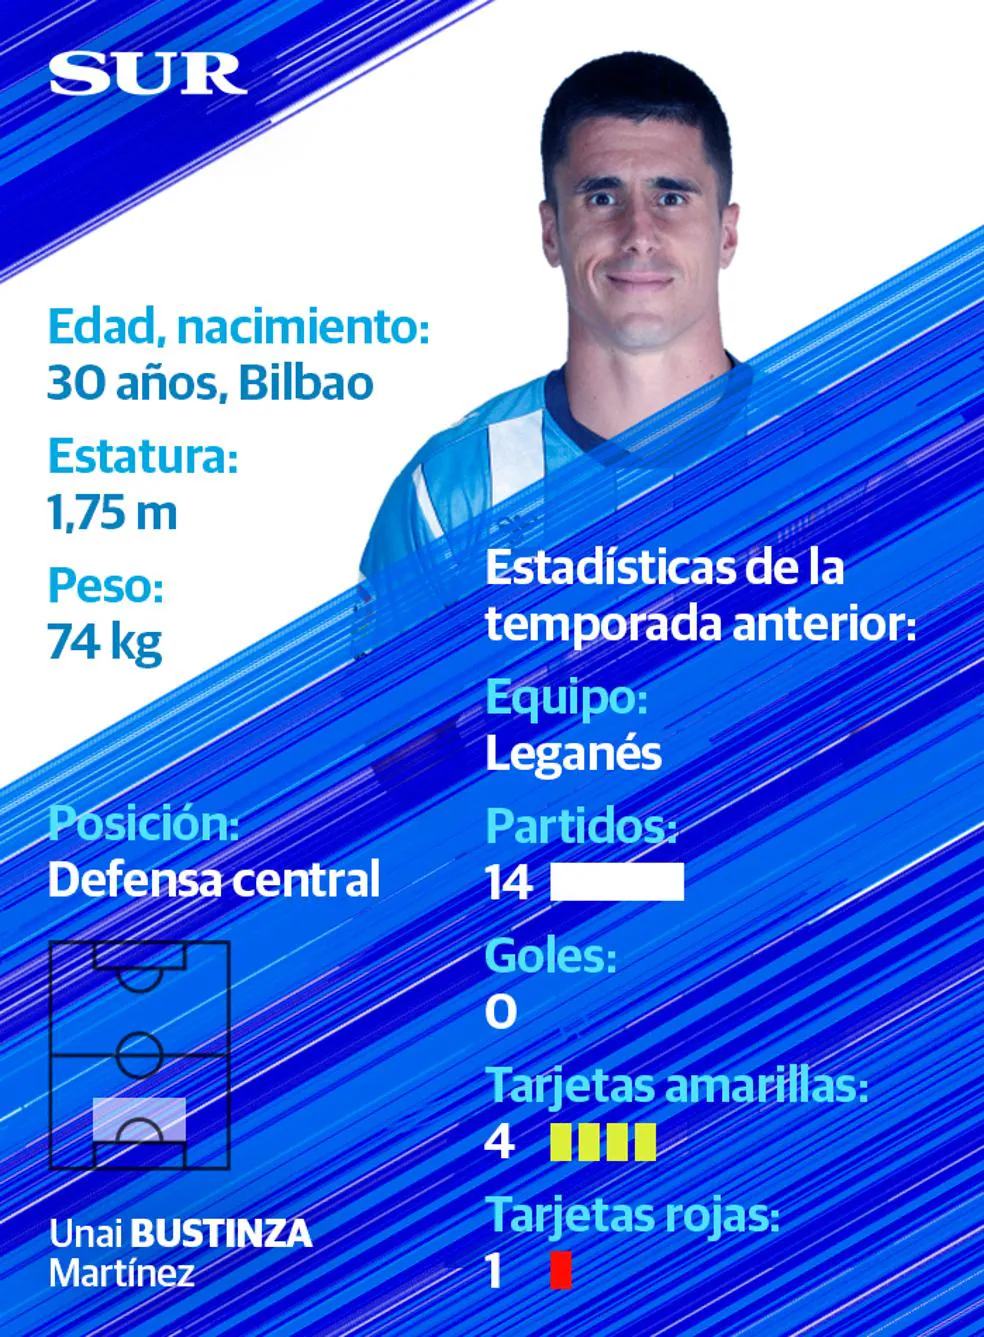 Ficha y estadísticas de Bustinza, jugador del Málaga CF